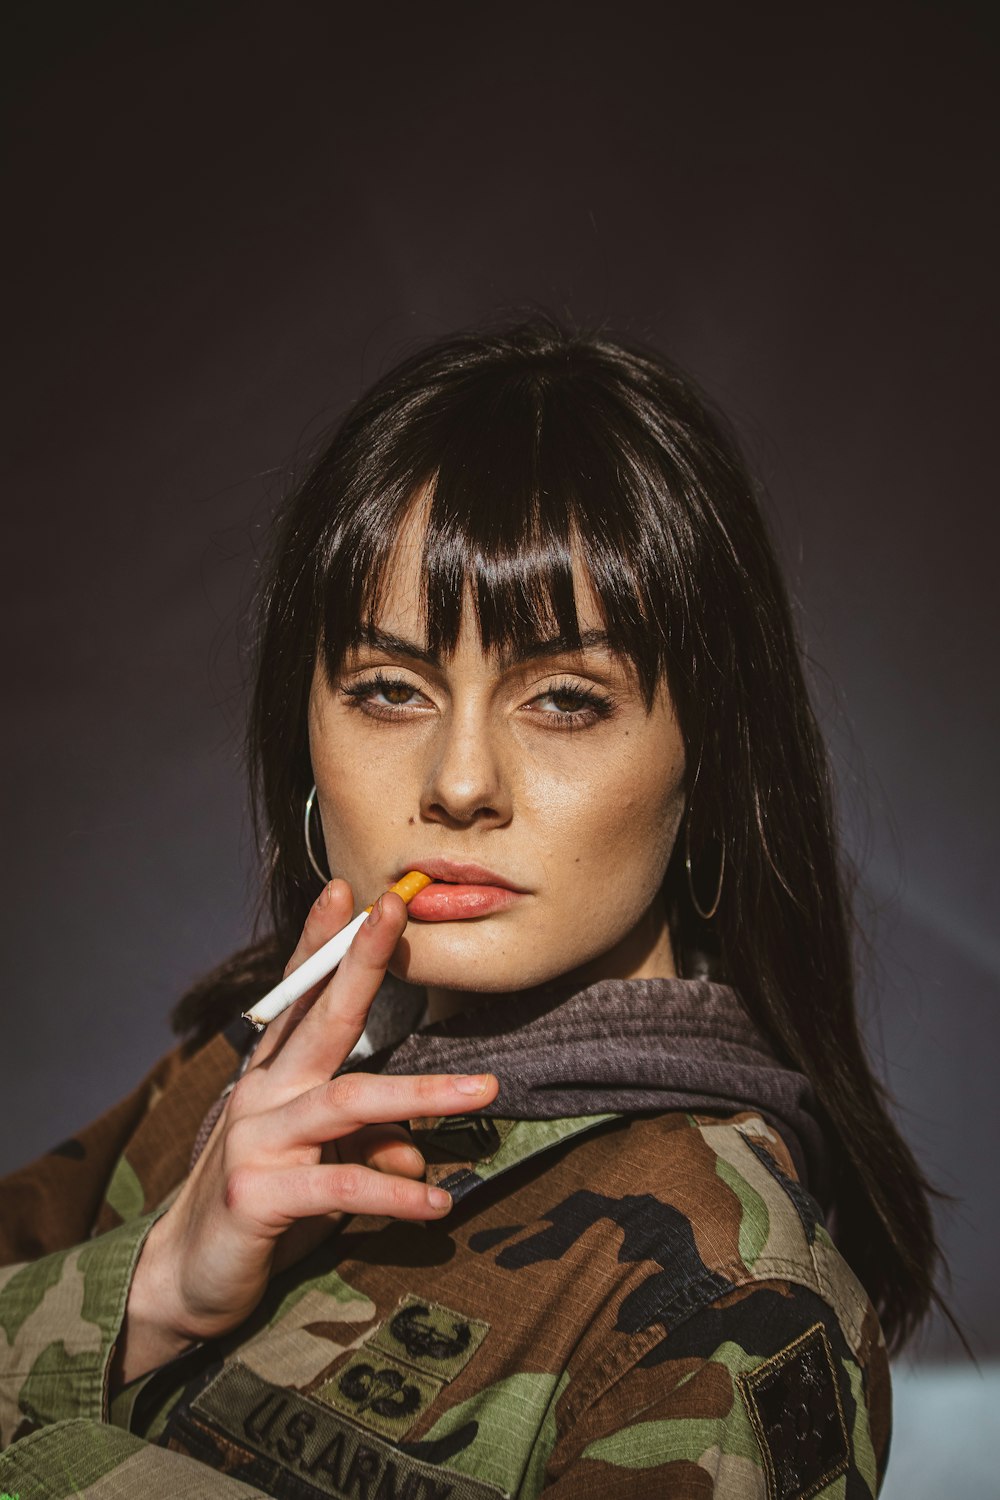 woman holding unlit cigarette stick